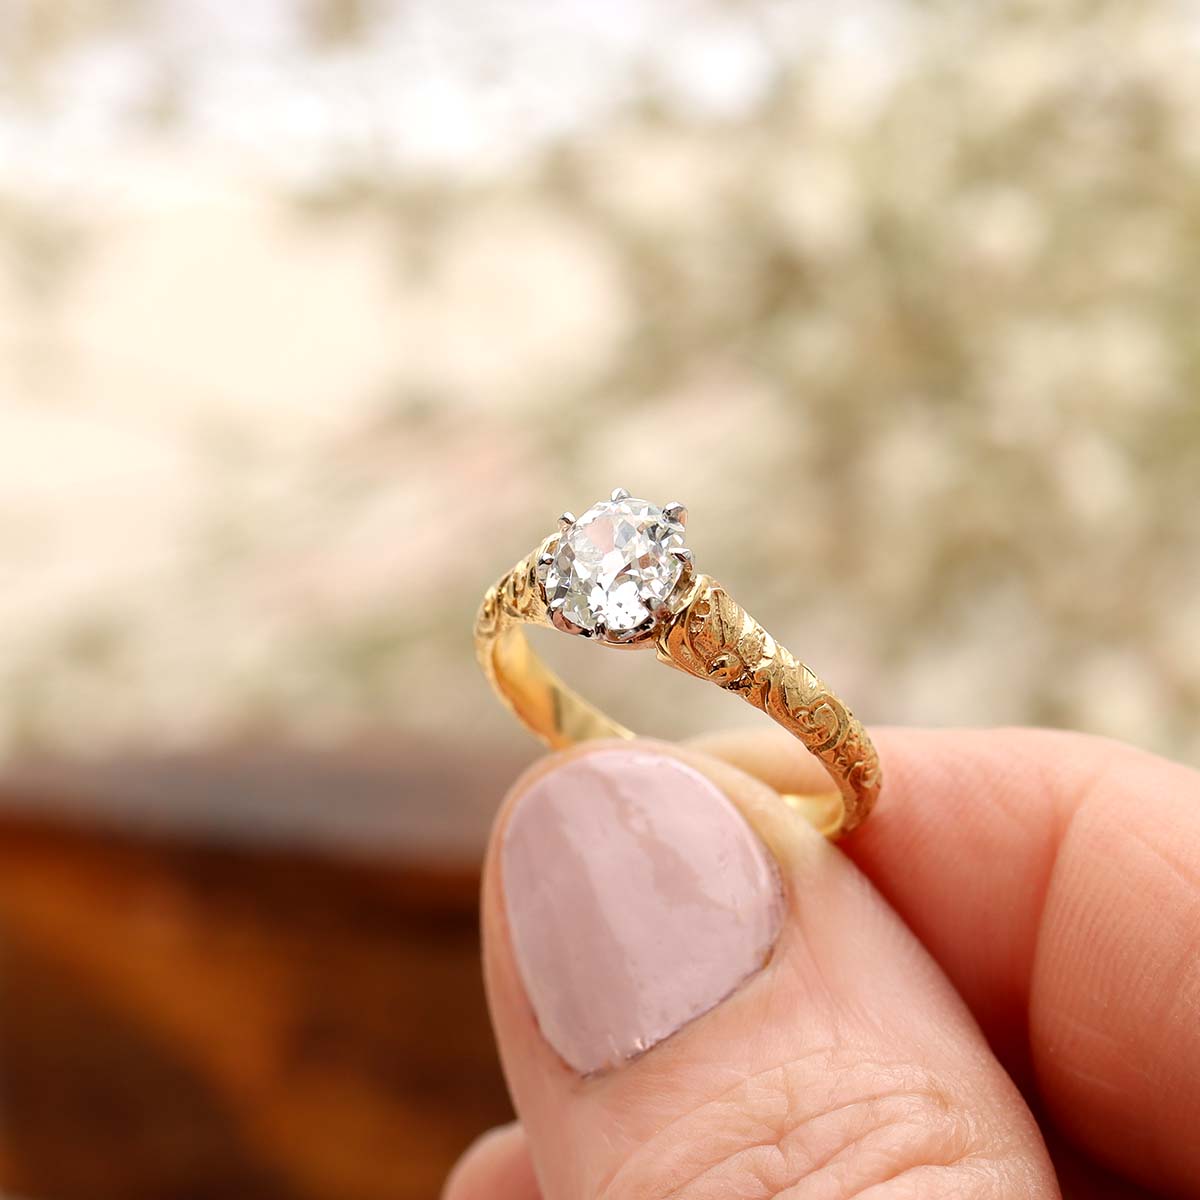 Replica Art Nouveau Engagement Ring with Old Mine Diamonds #2506-1 Default Title